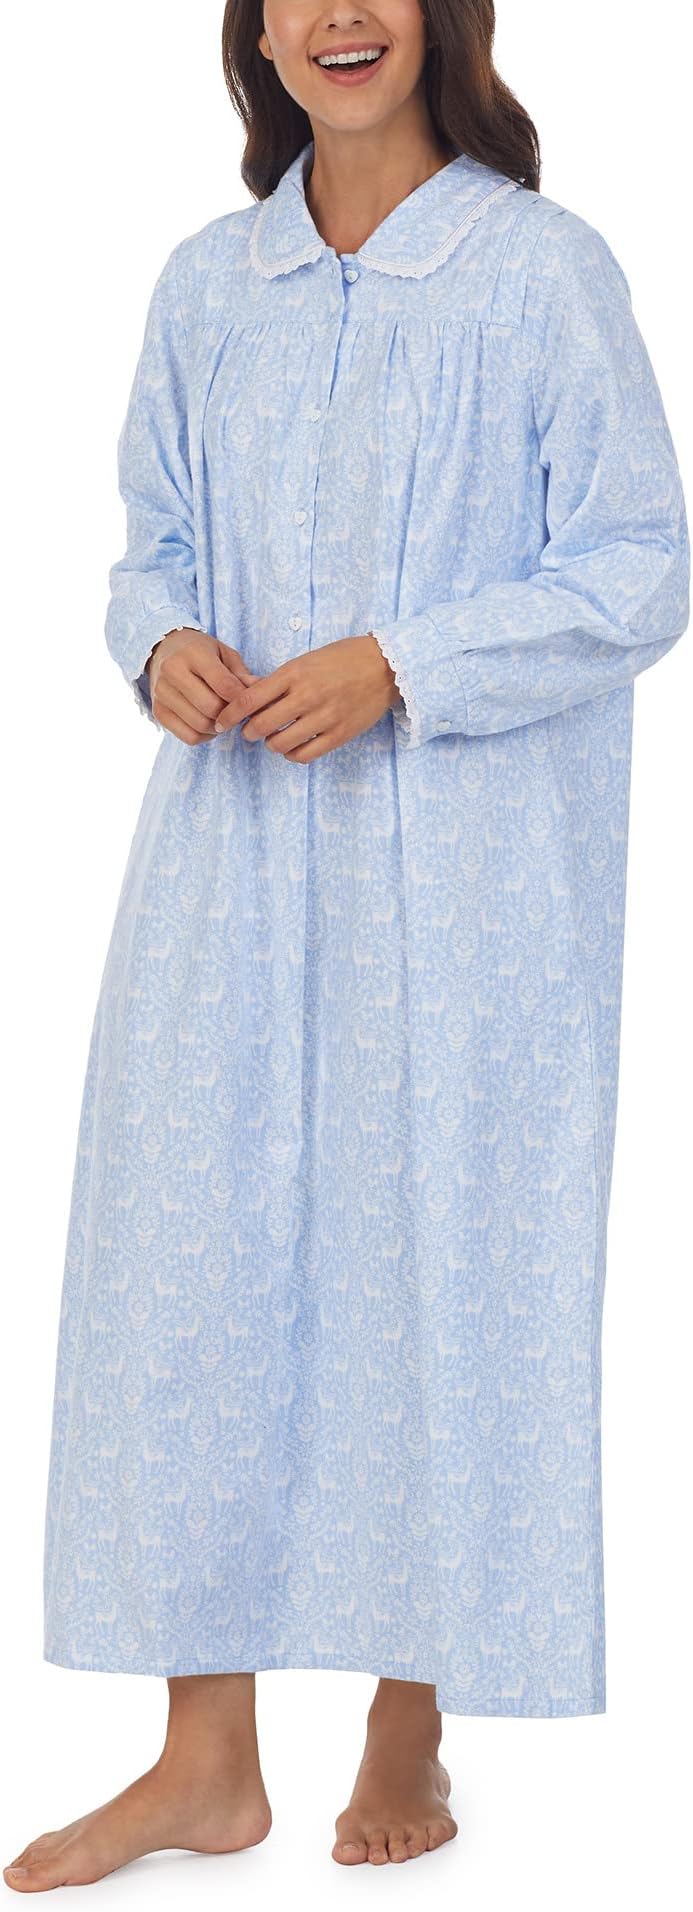 Классическое платье Peterpan длиной 50 дюймов Lanz of Salzburg, цвет Blue Ground Deer